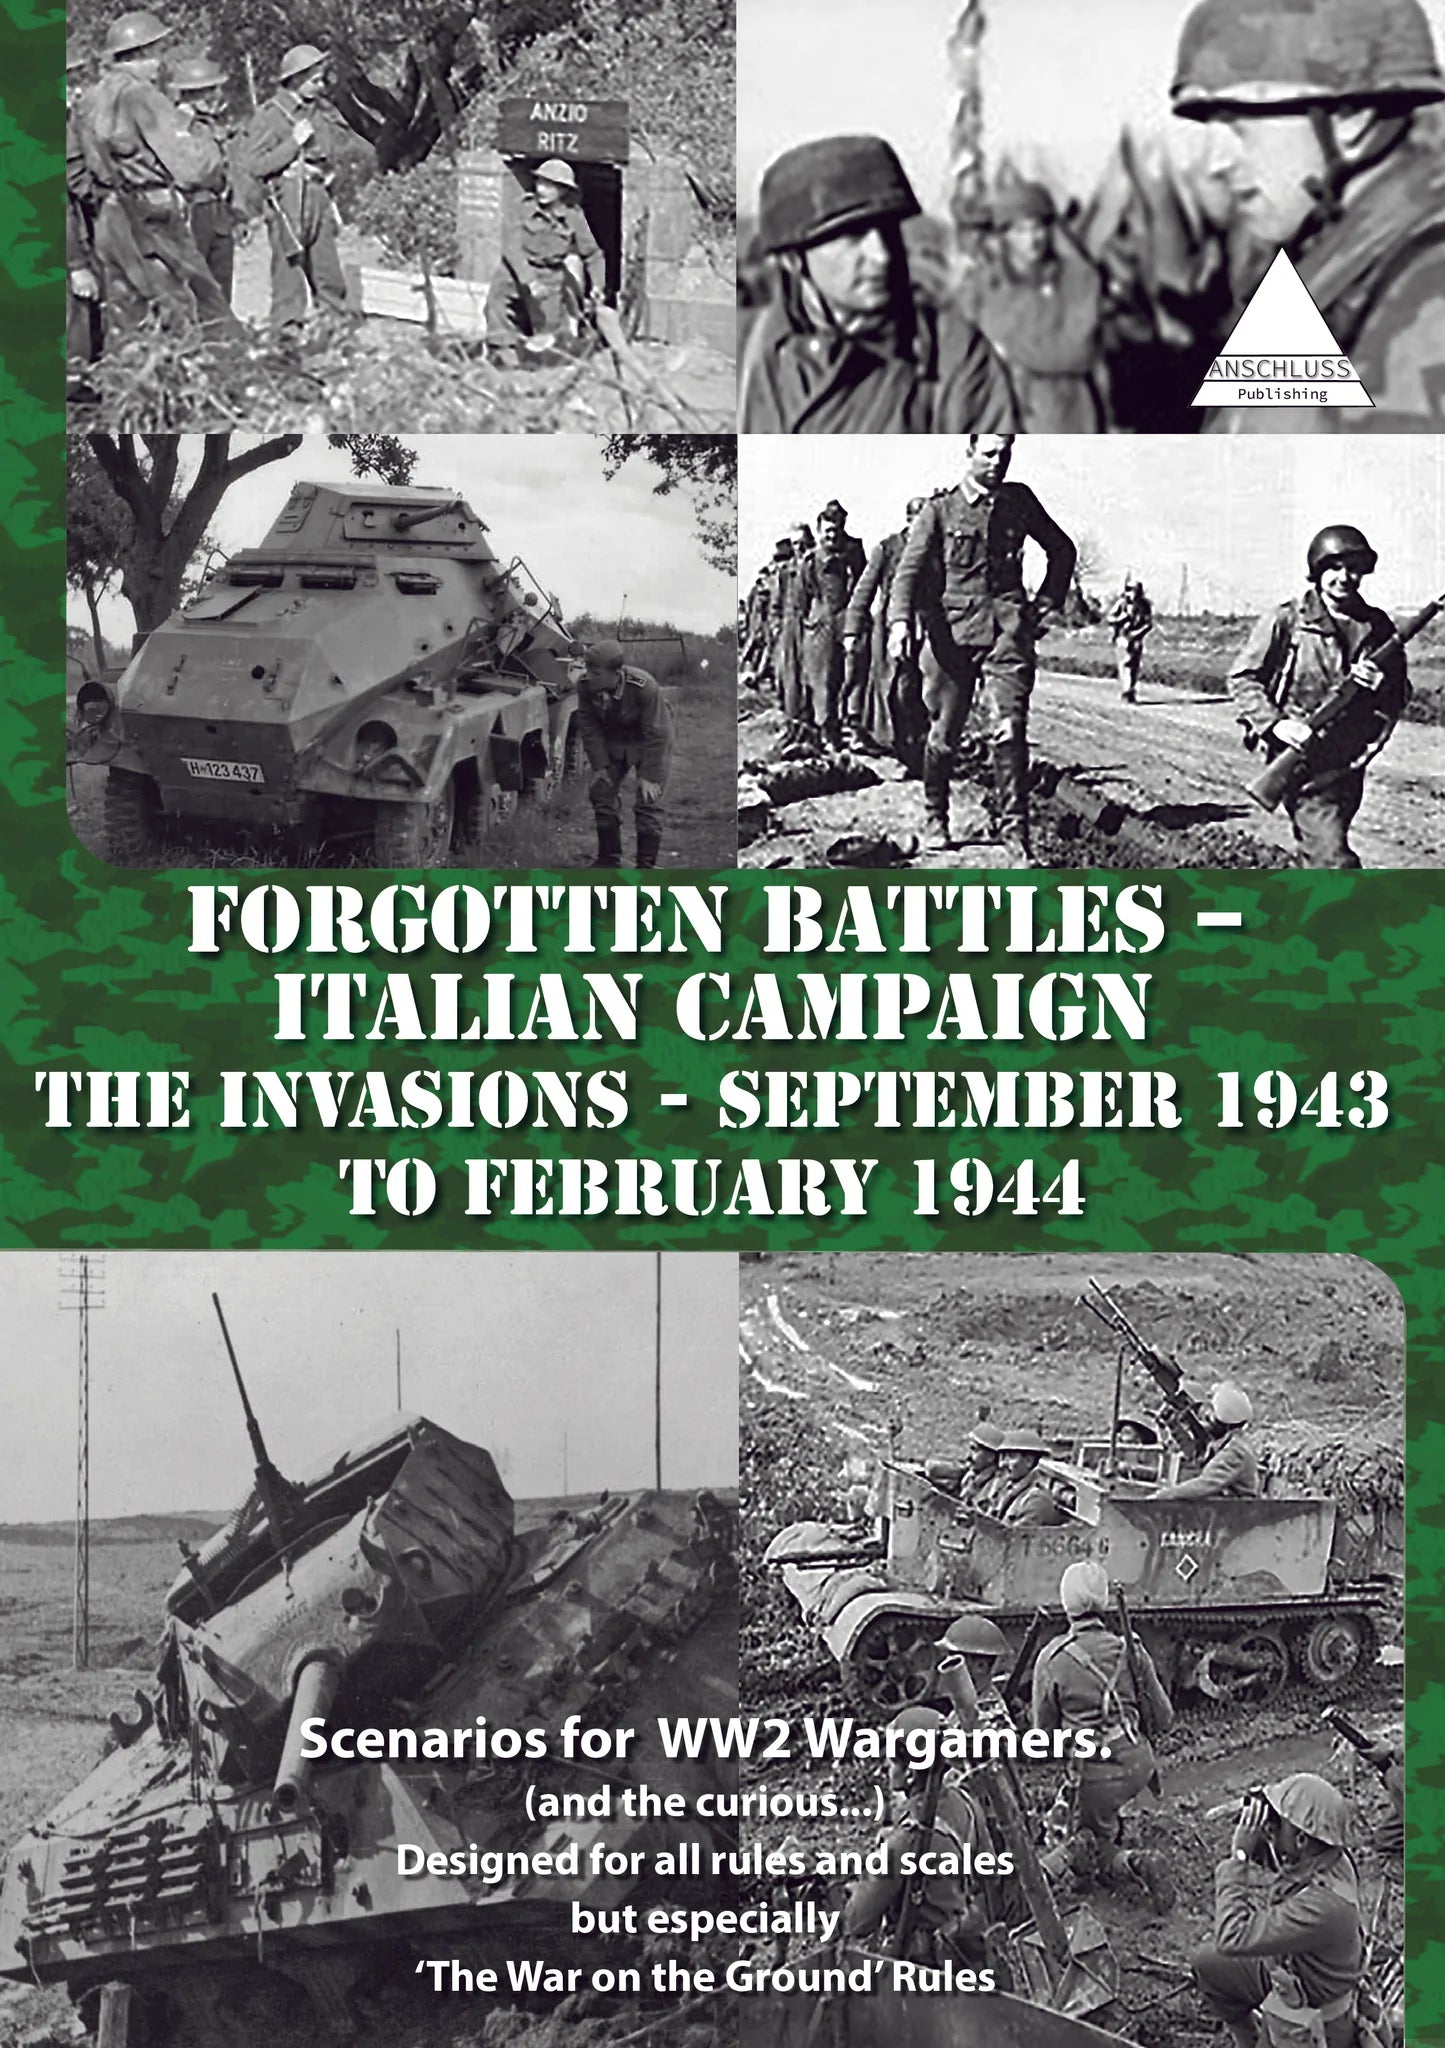 Battaglie dimenticate - Campagna d'Italia Le invasioni dal settembre 1943 al febbraio 1944